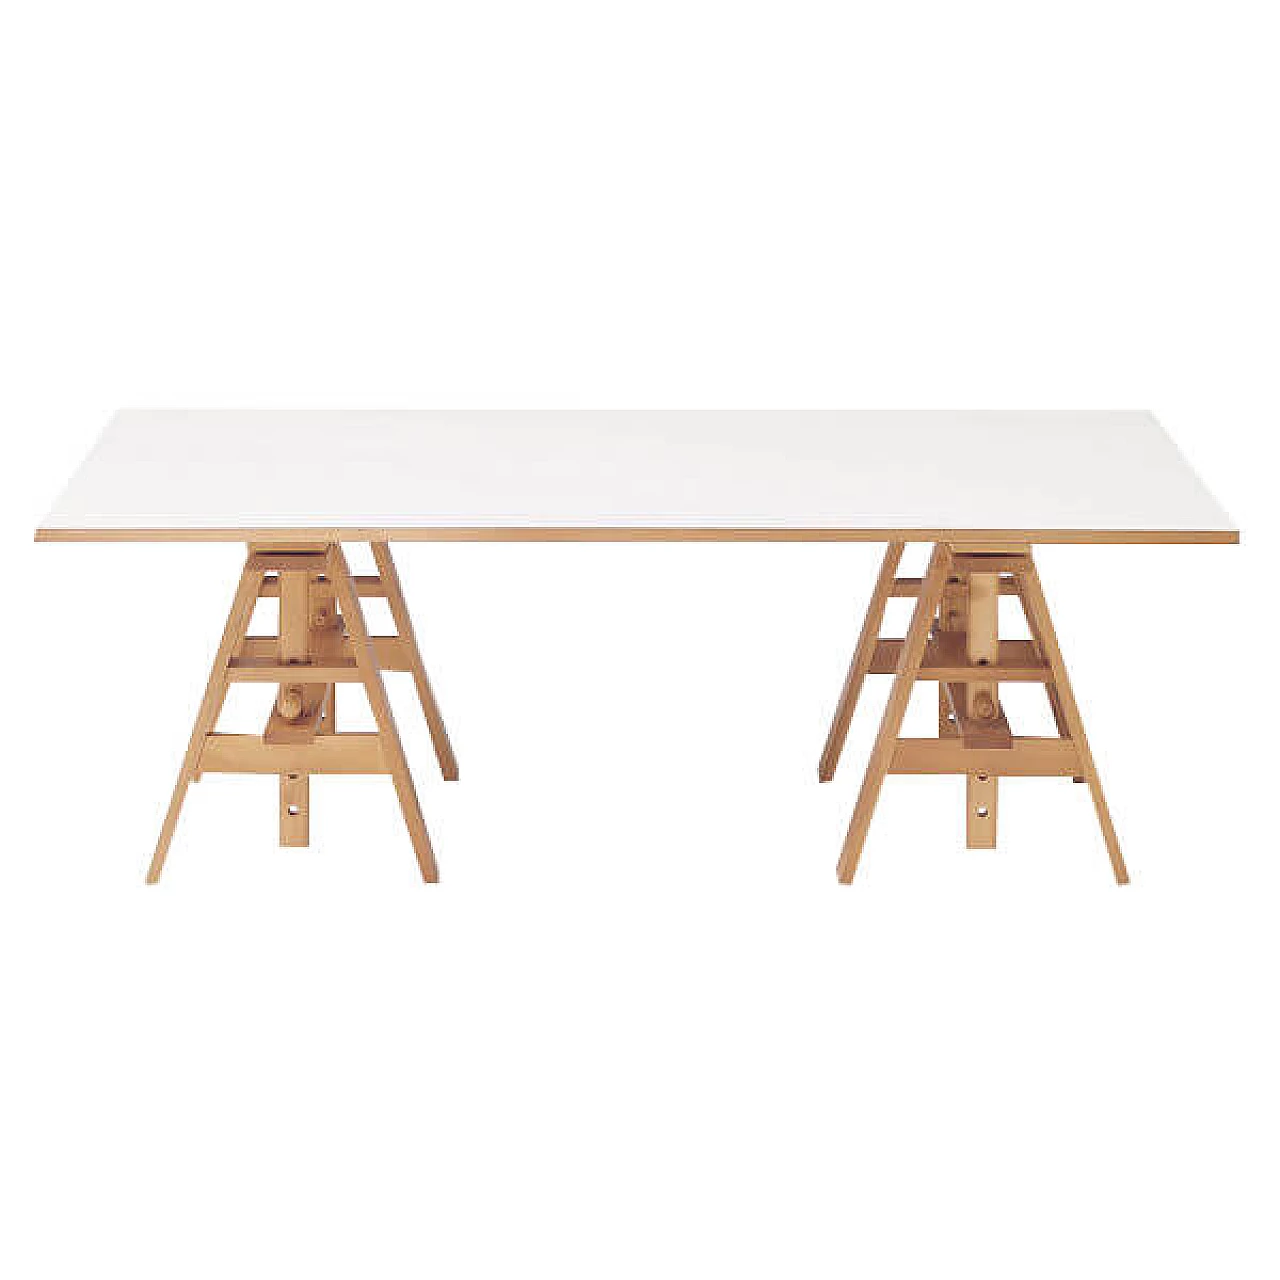 Leonardo table by Castiglioni for Zanotta 1113006